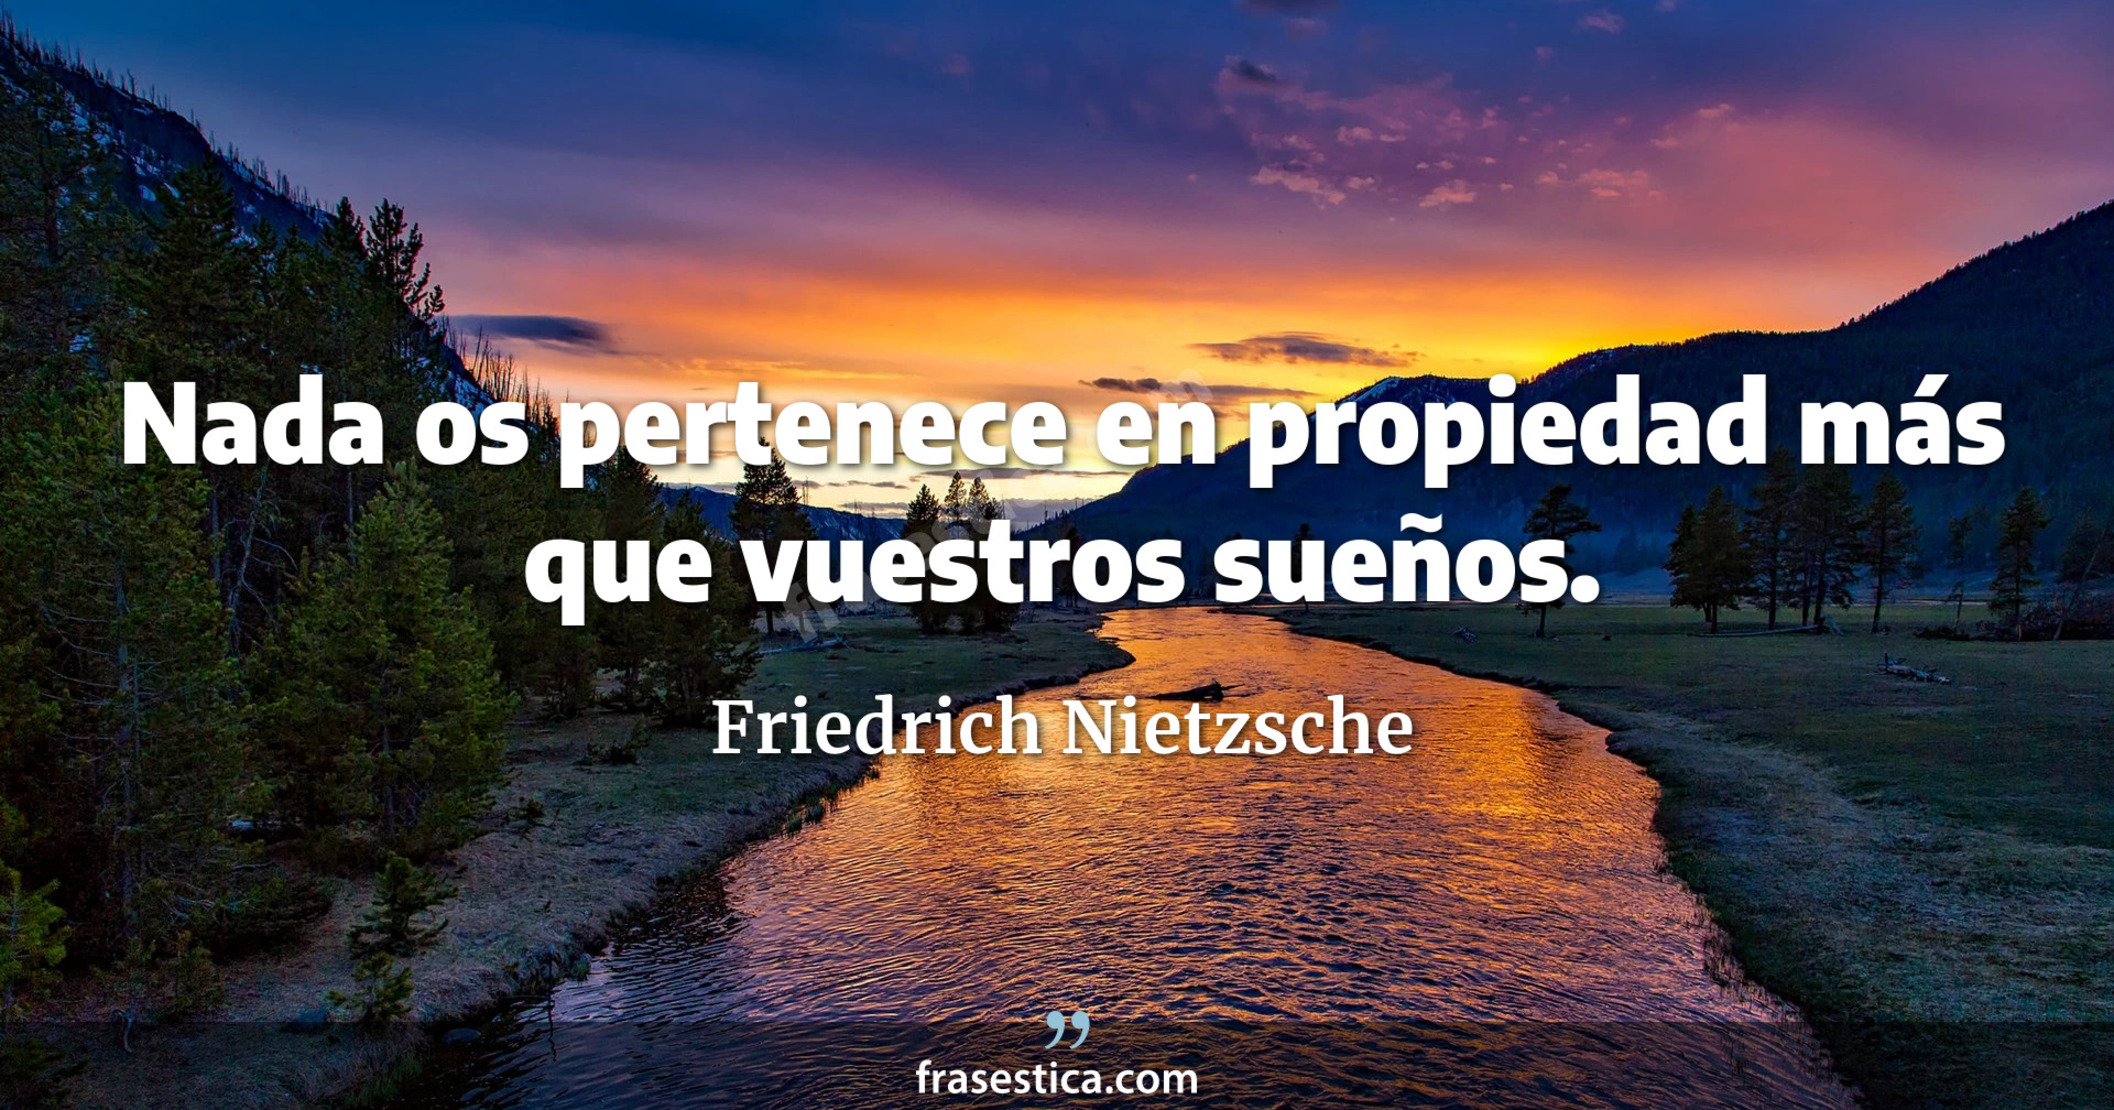 Nada os pertenece en propiedad más que vuestros sueños. - Friedrich Nietzsche